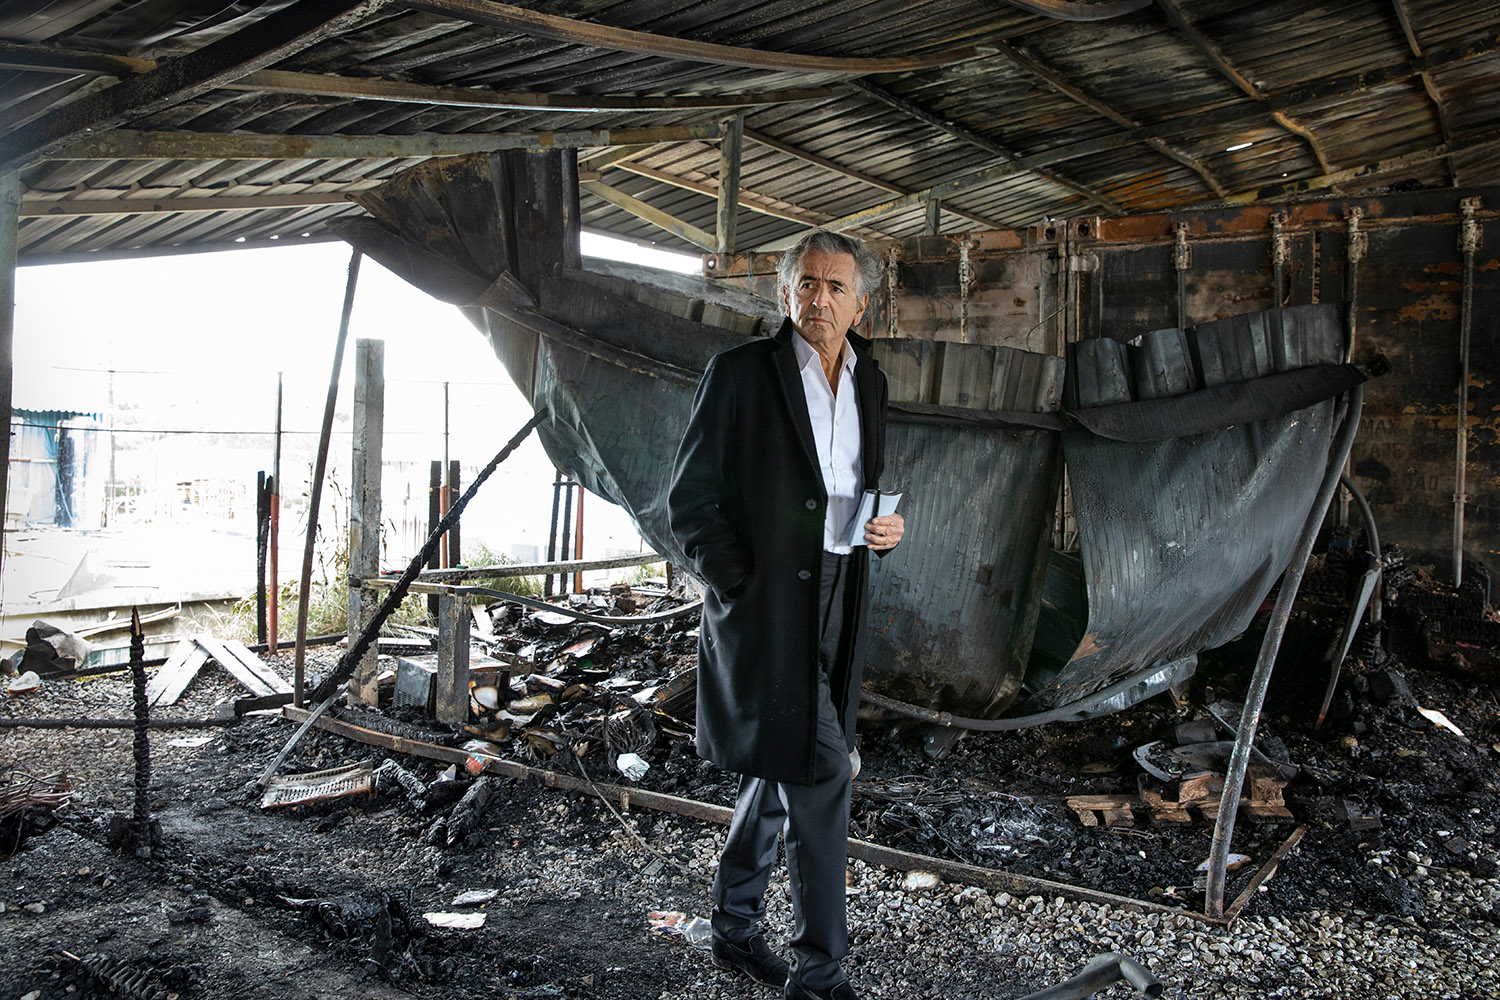 Bernard-Henri Lévy marche, un carnet à la main, dans les décombres d'un incendie dans le camp de migrants de Moria.